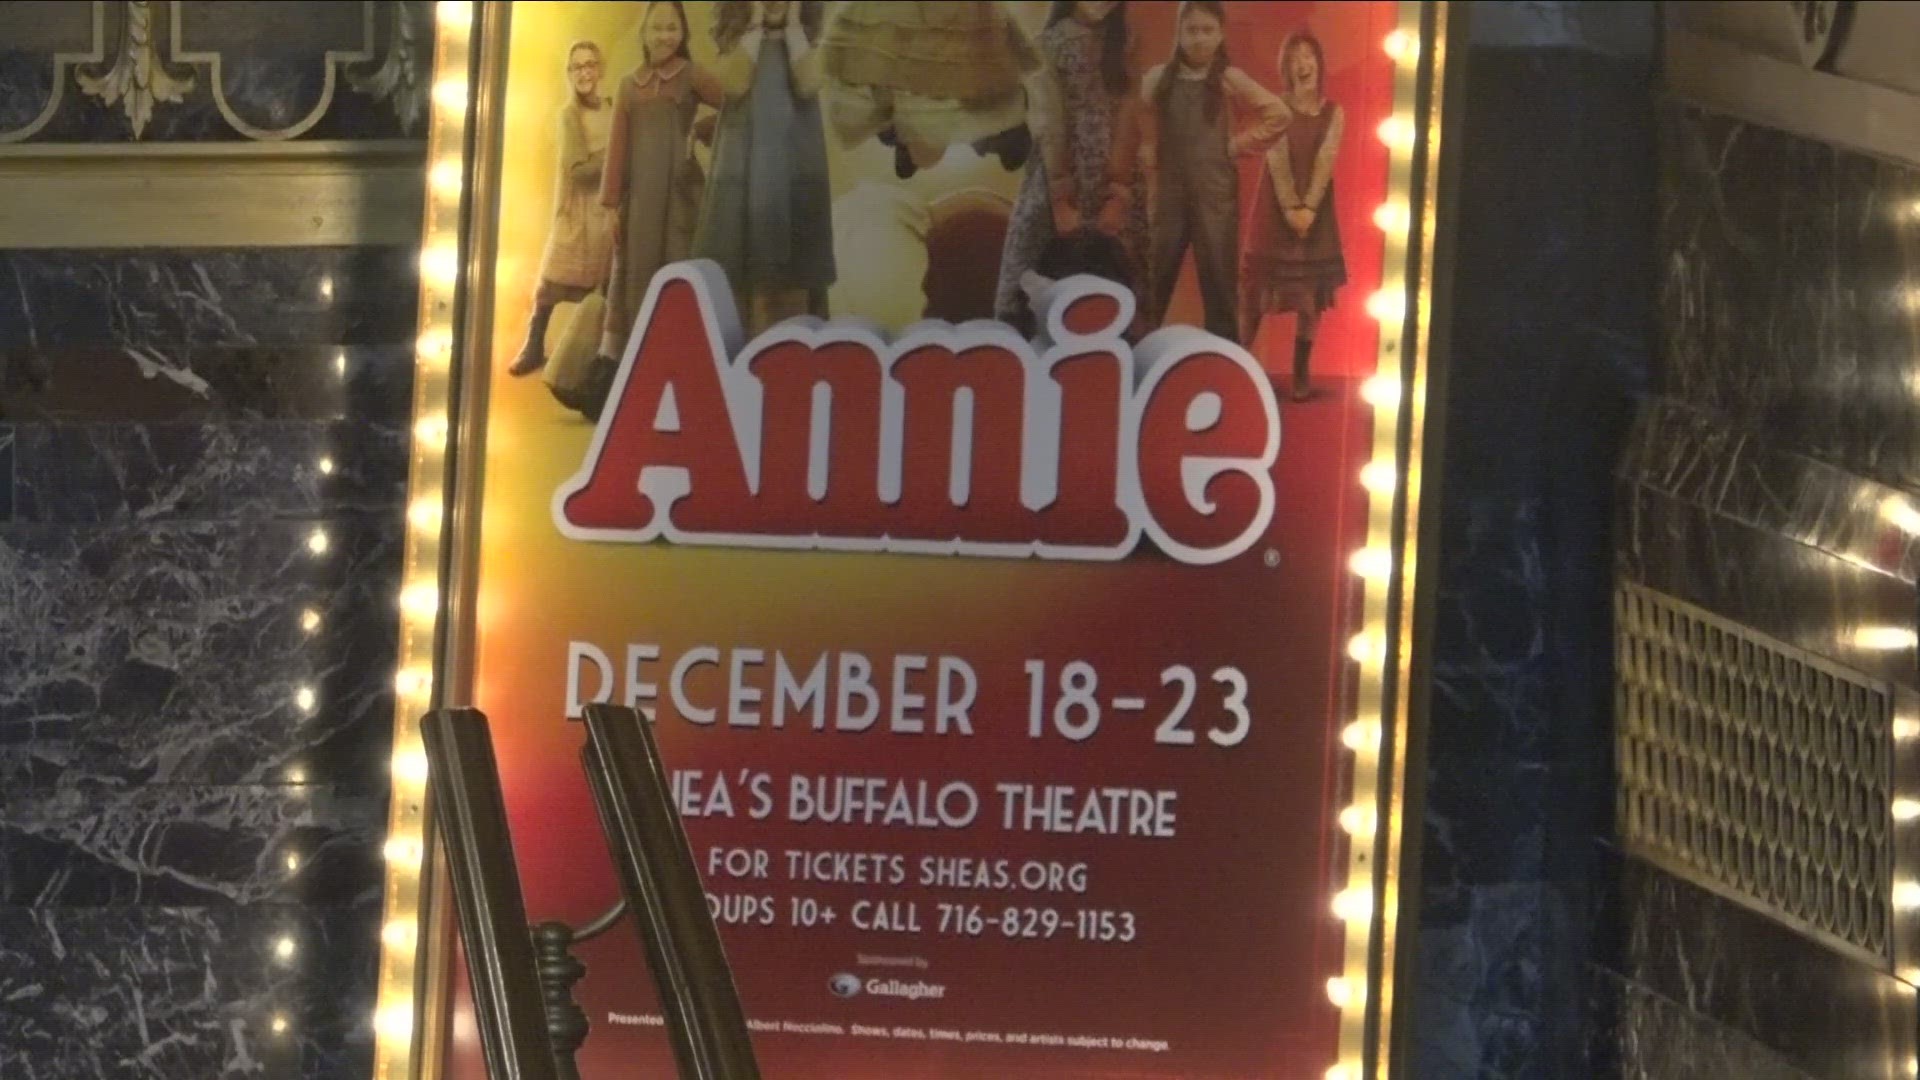 Annie the musical at Sheas this holiday season